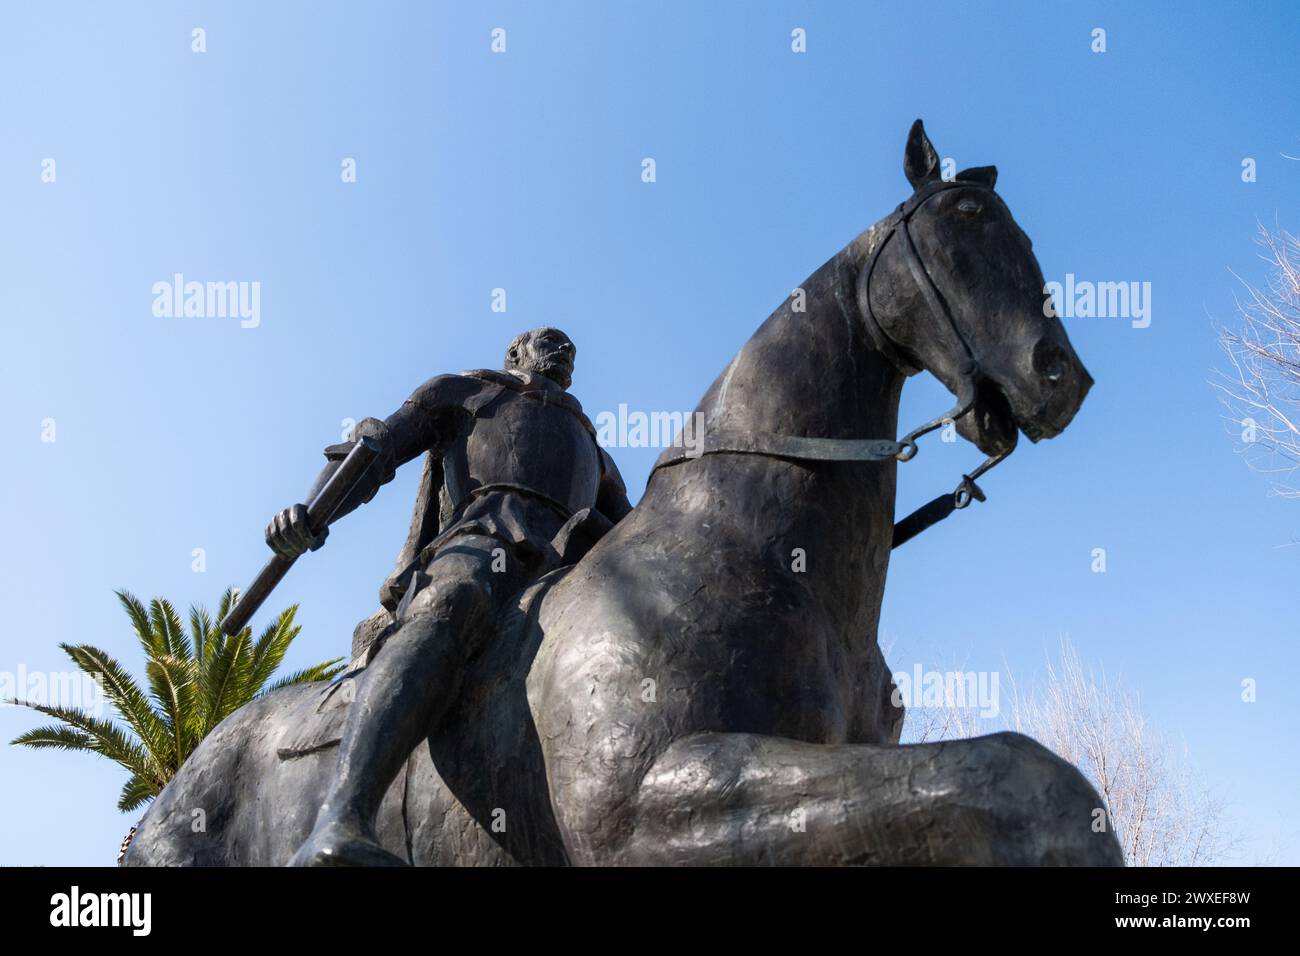 Detaile del monumento equestre di Don Diego de Almagro, capitano generale del Regno del Cile, a cavallo nella piazza principale di Almagro in CIU Foto Stock